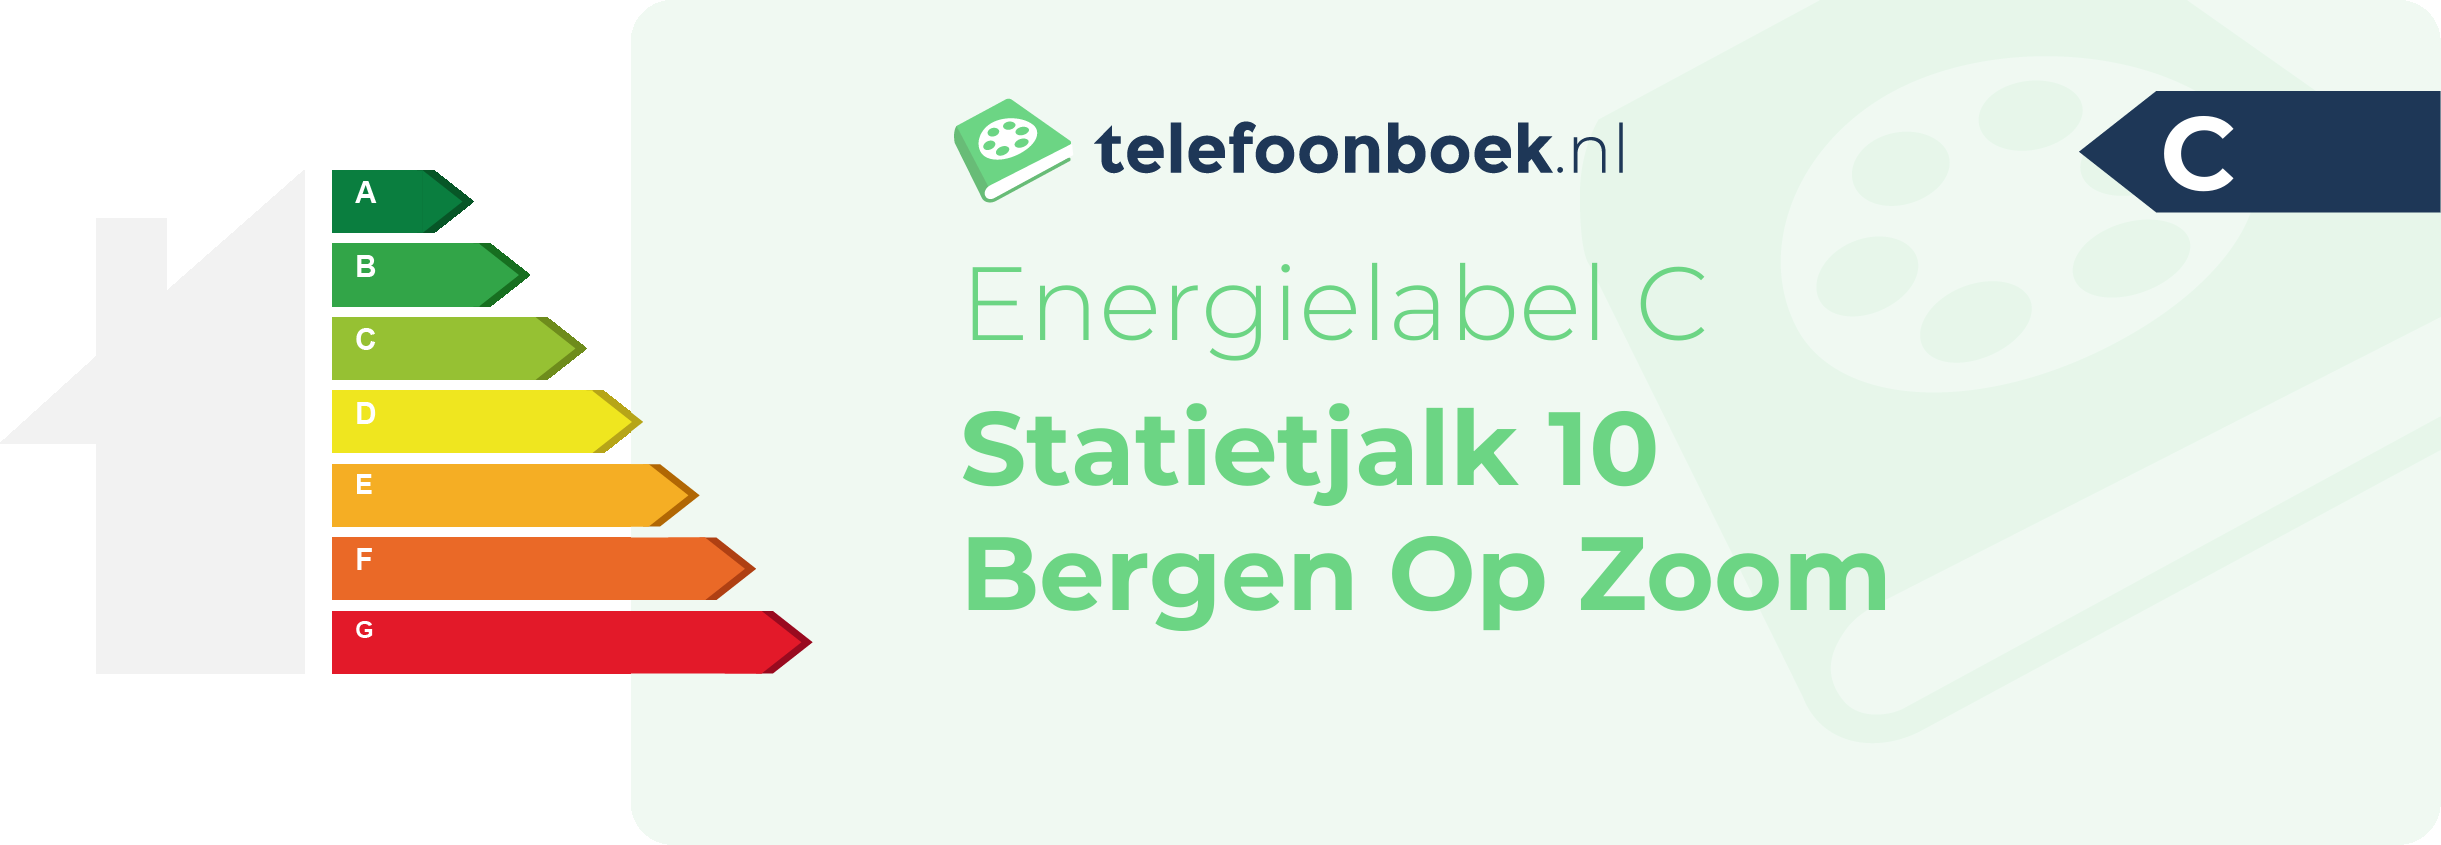 Energielabel Statietjalk 10 Bergen Op Zoom